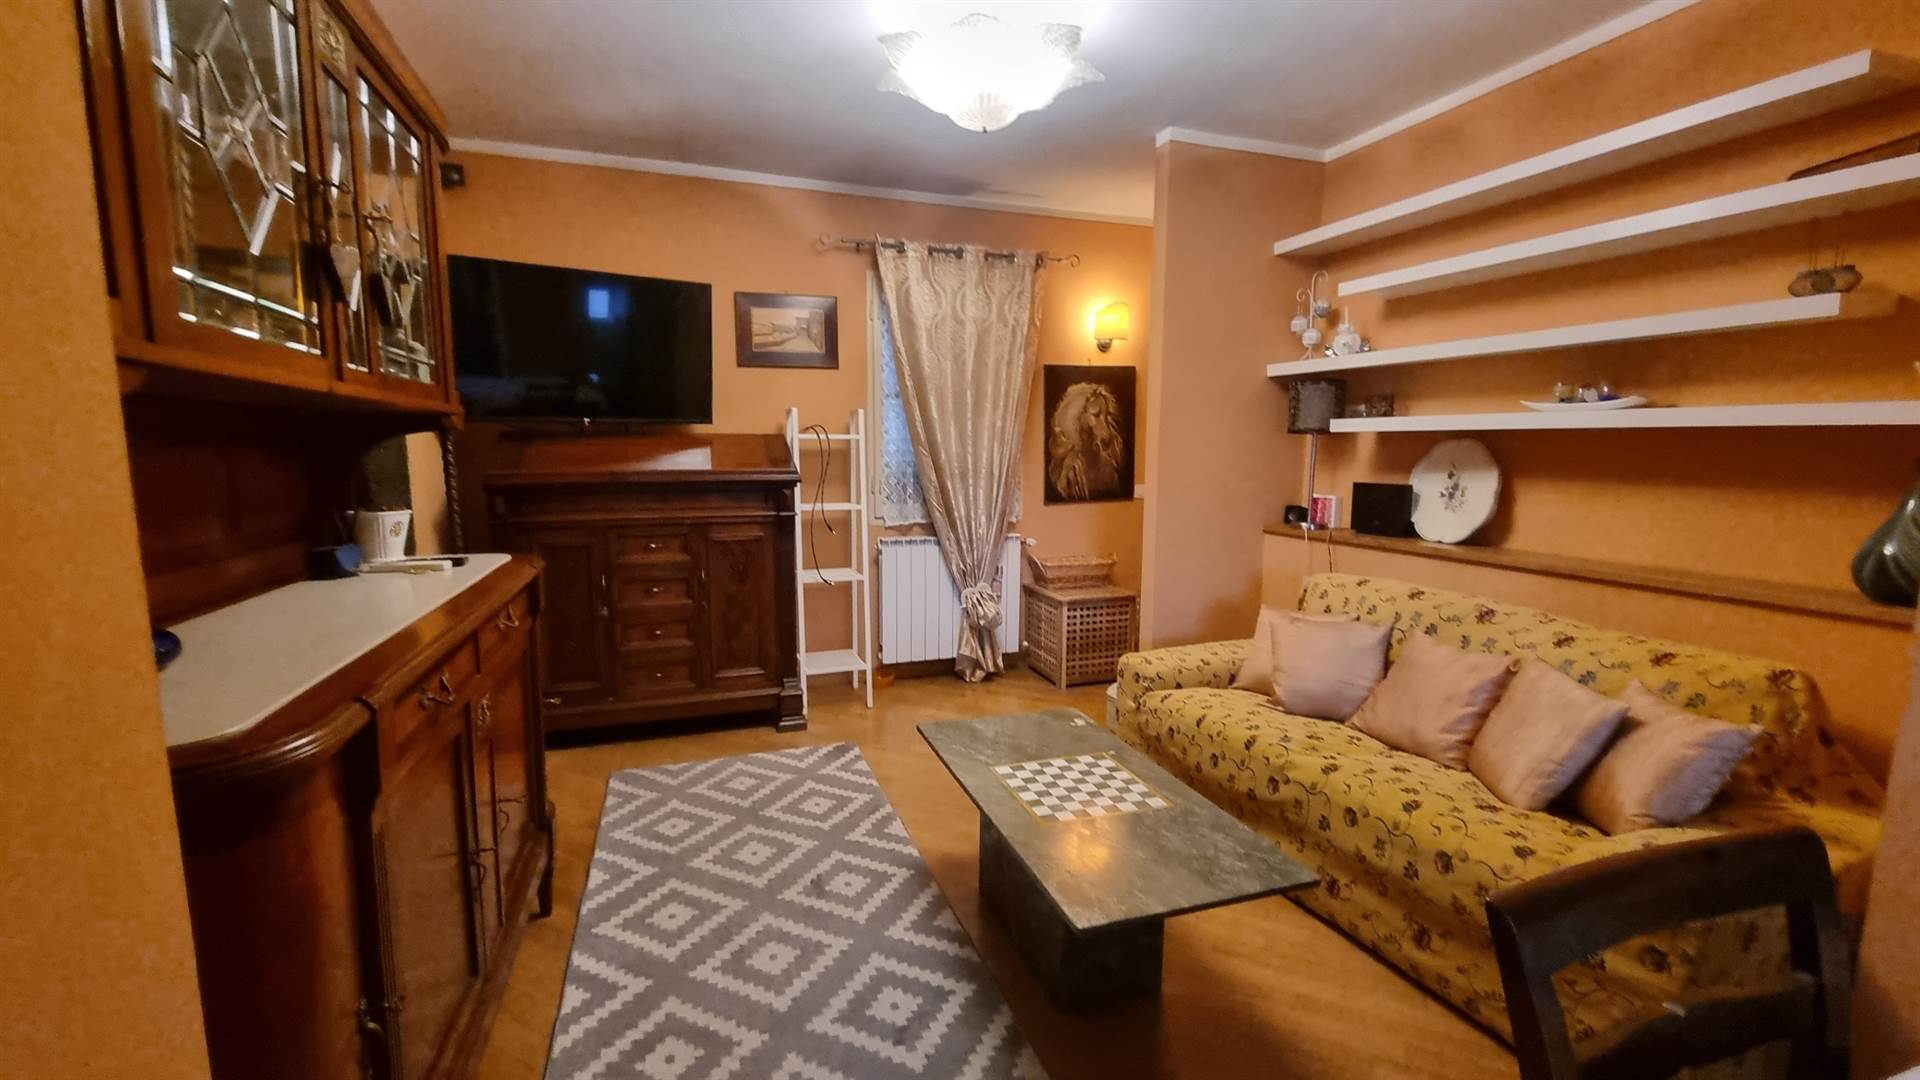 Appartamento in affitto a Firenze San Frediano